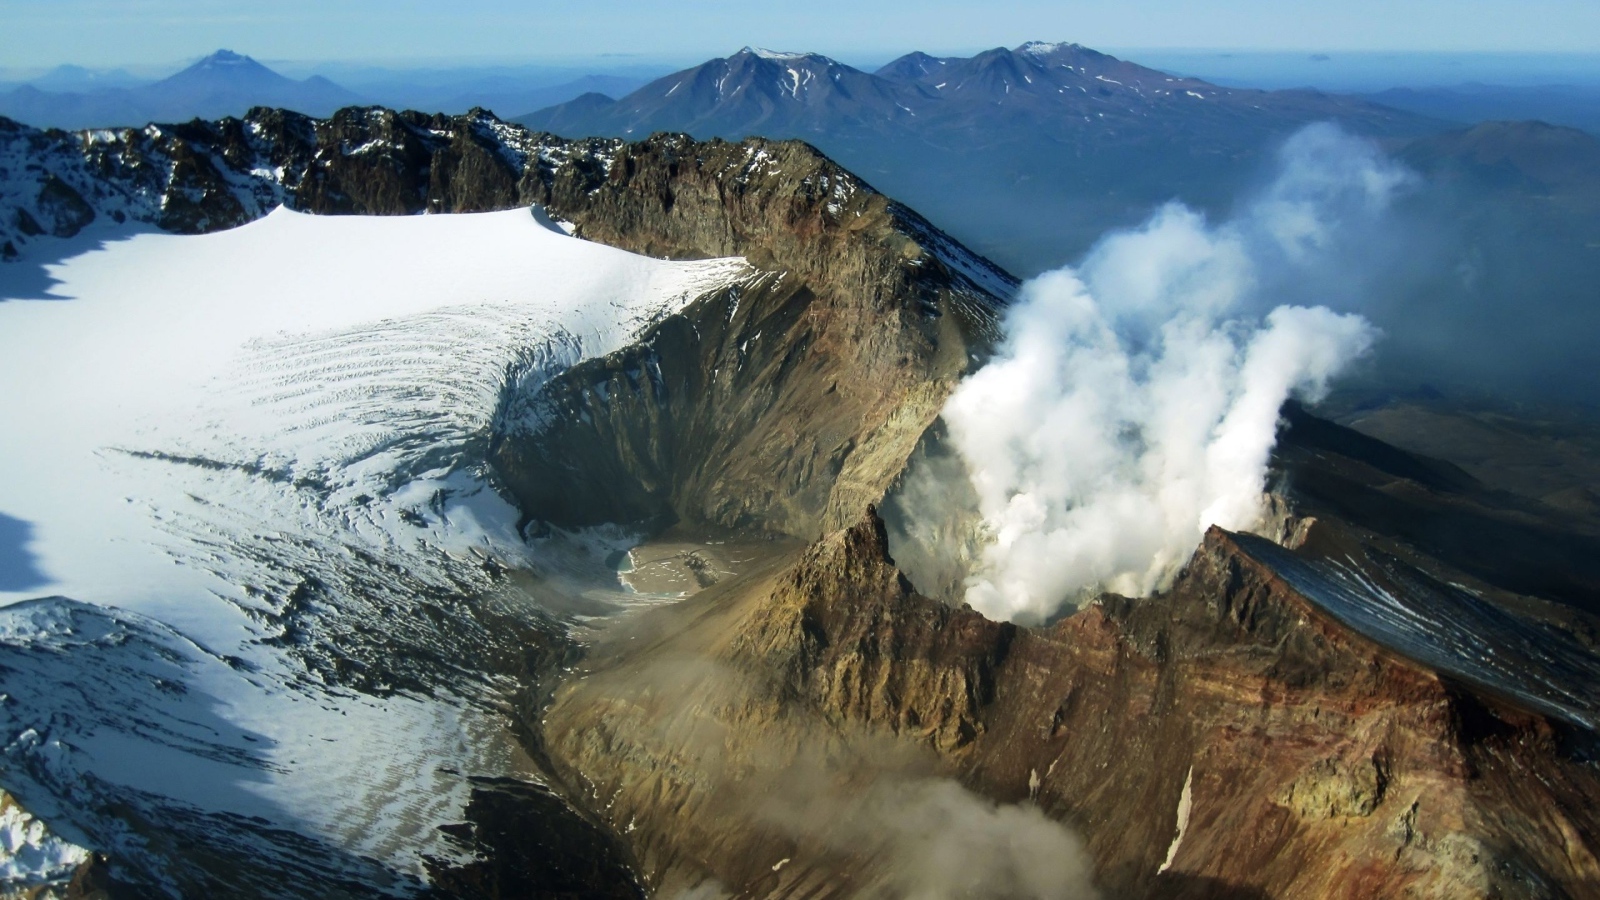 The smoking volcano, Kamchatka, Russia 